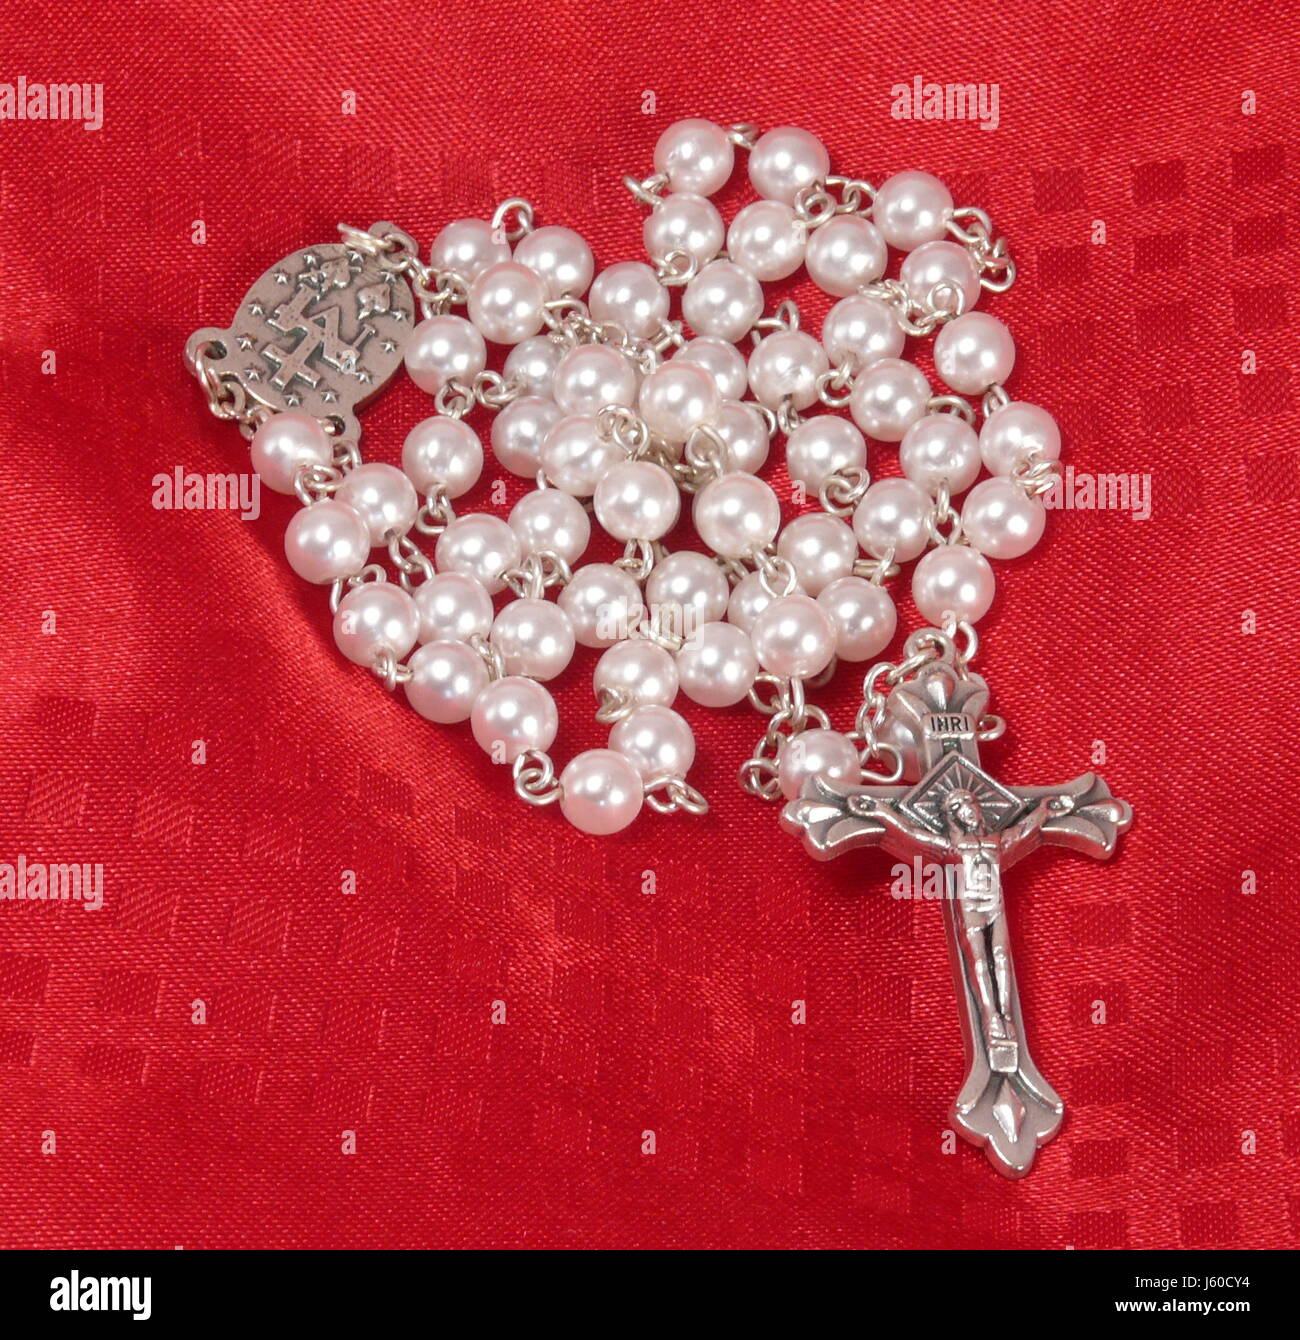 Glauben beten katholische Gebet Rosenkranz Rosenkranz Perlen